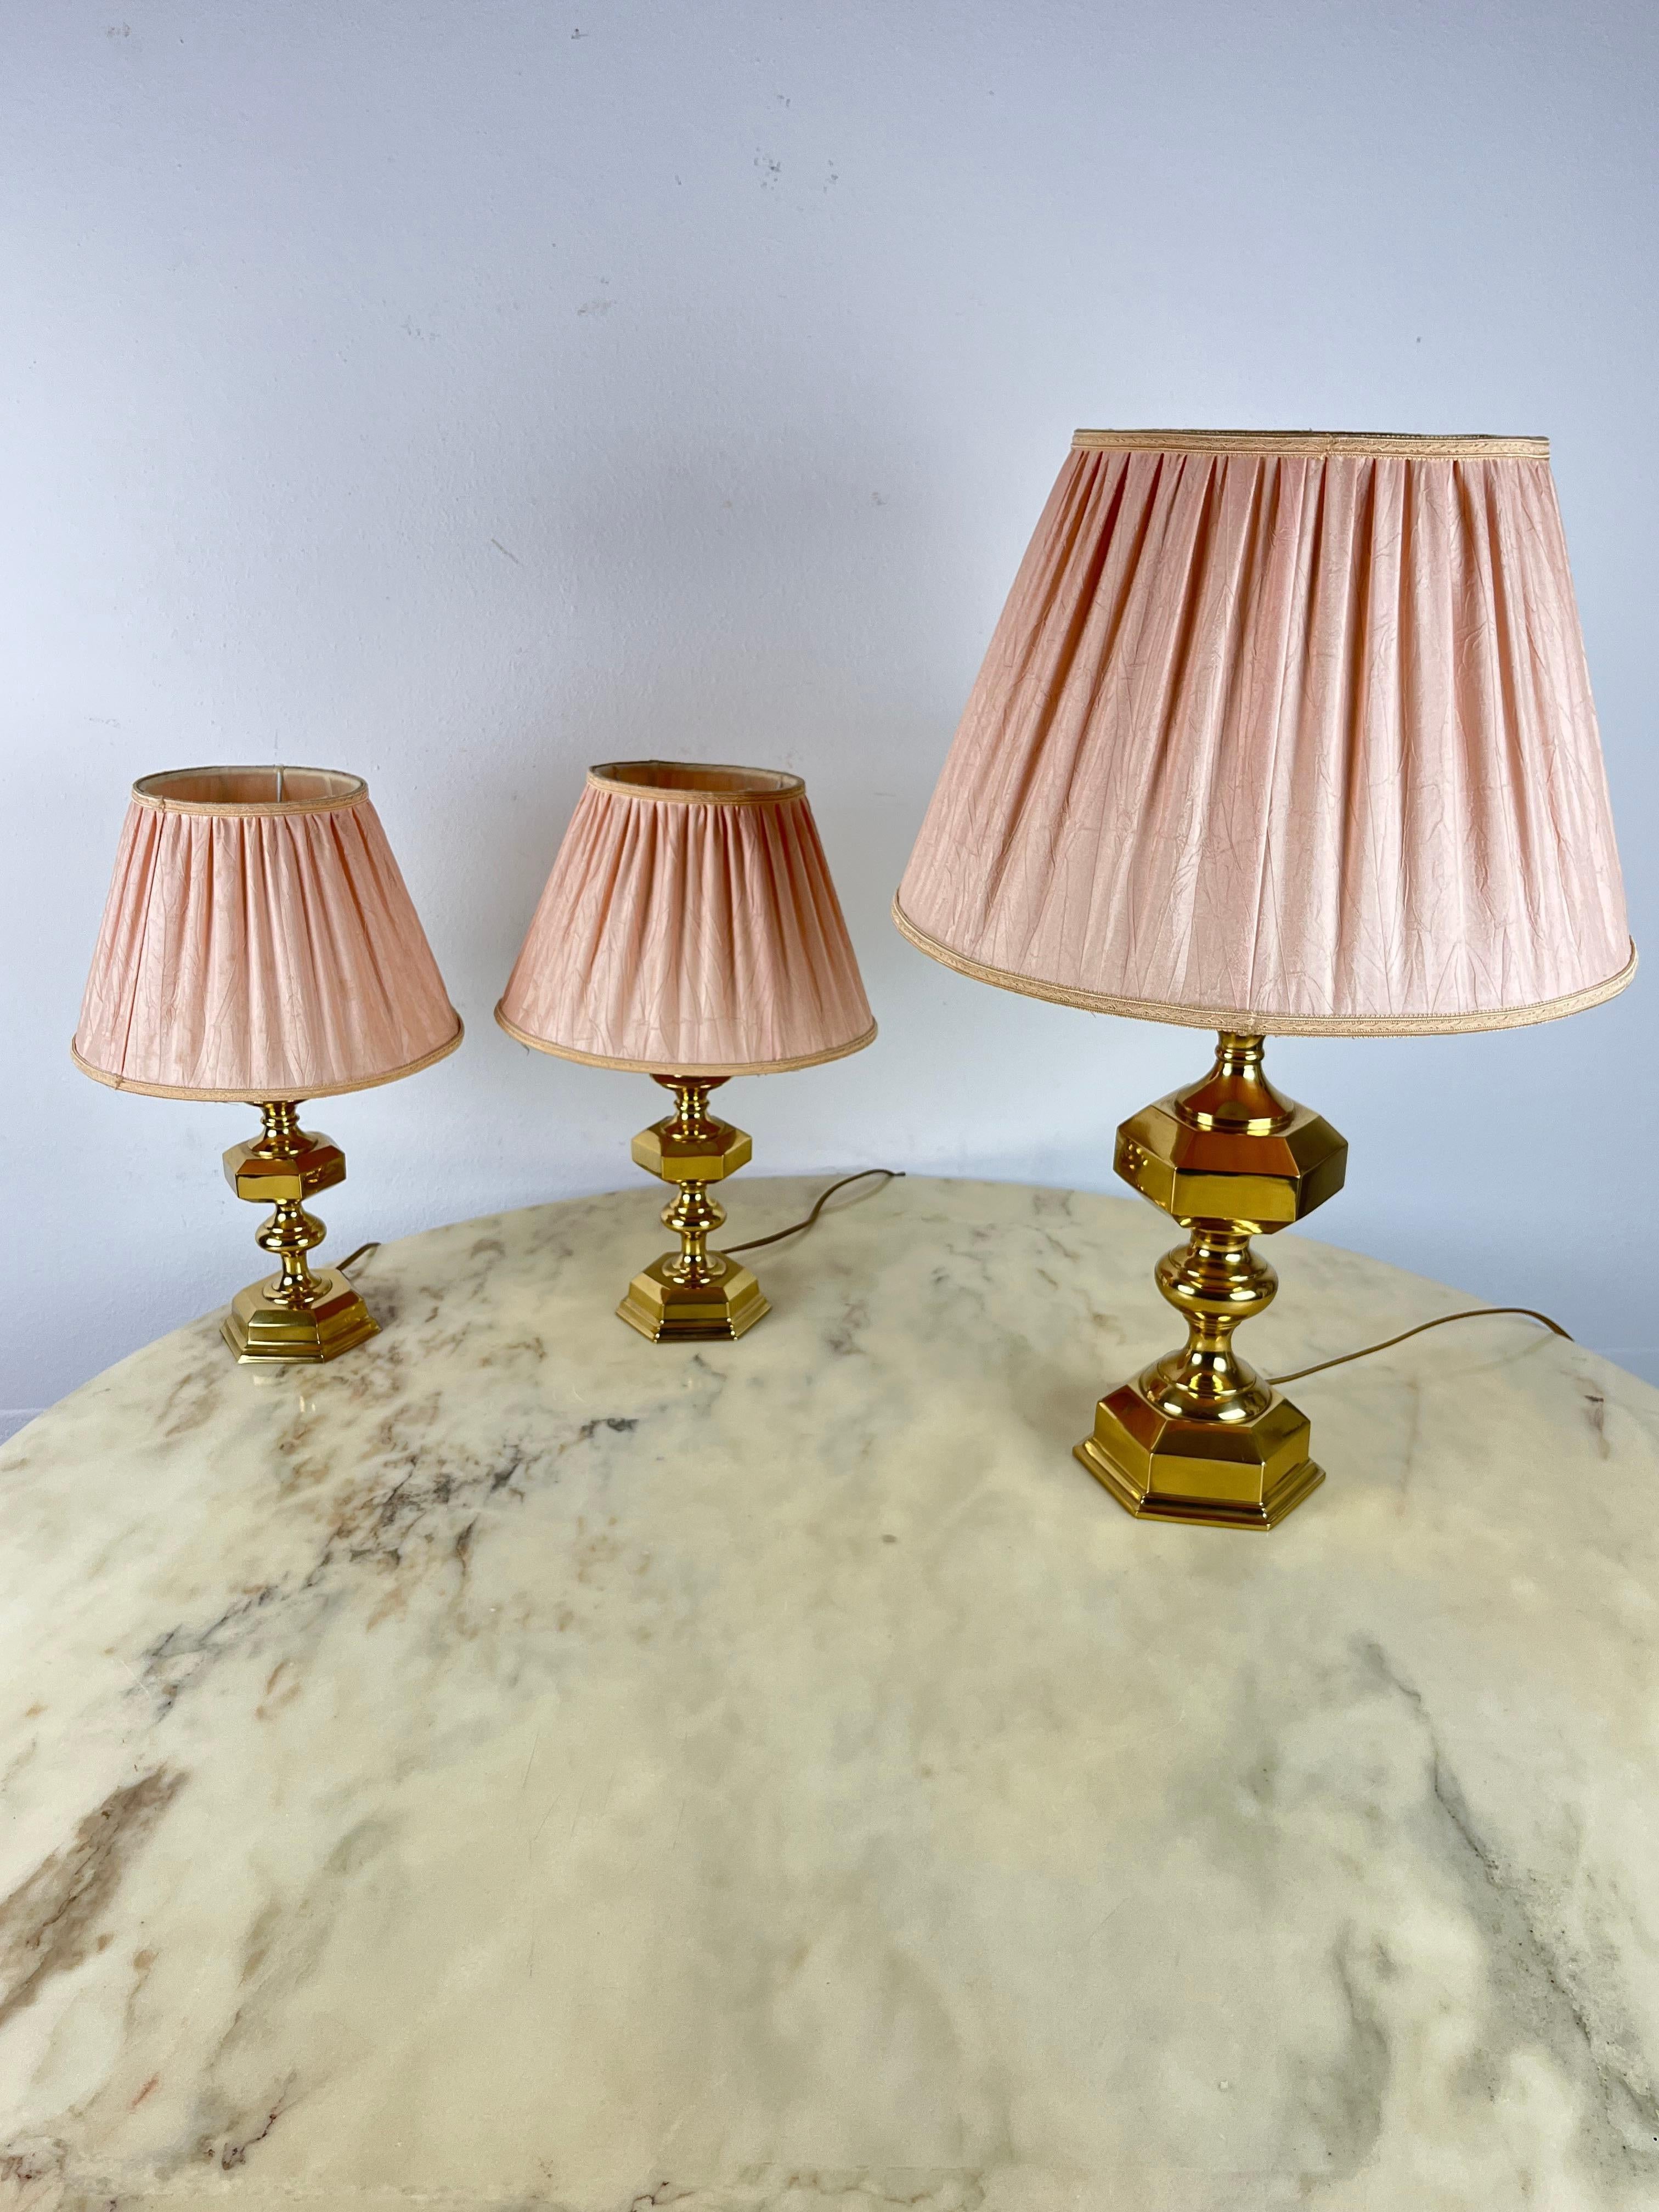 Ensemble de 3 lampes de table italiennes en laiton, années 1980
Trouvés dans un appartement noble, ils sont intacts et en état de marche. Ils peuvent être utilisés dans une chambre à coucher. Le plus grand fonctionne avec une lampe E14 et mesure 40